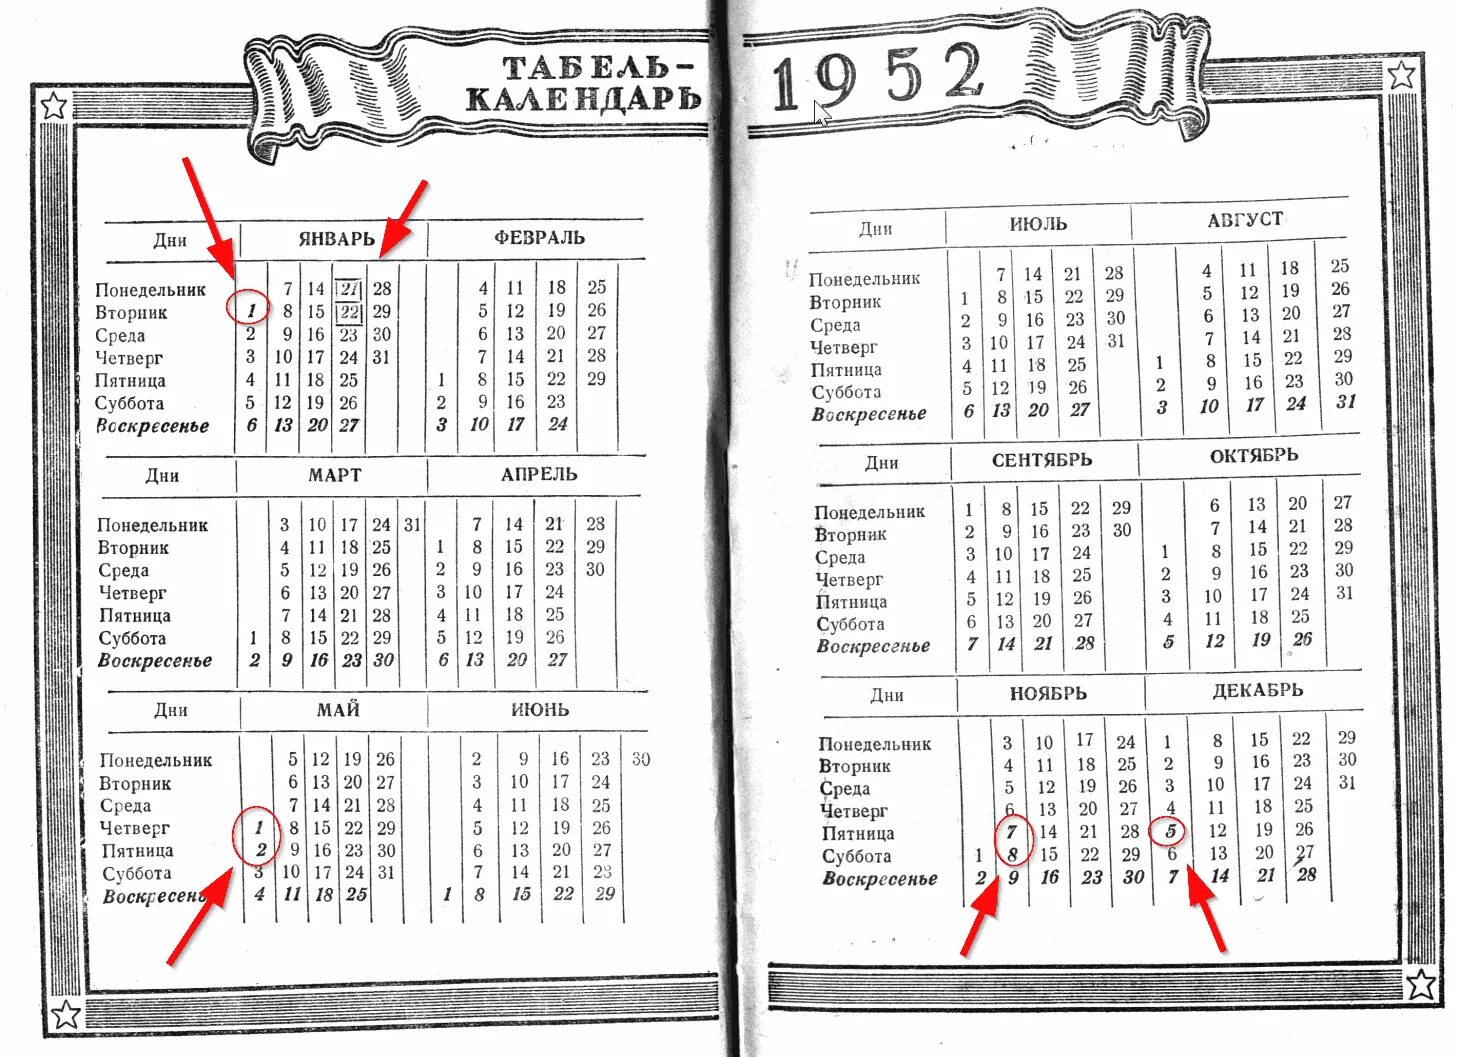 Календарь 1952 года. Календарь 1952 года по месяцам и дням. Табель календарь 1952. Какой день недели был 6 сентября